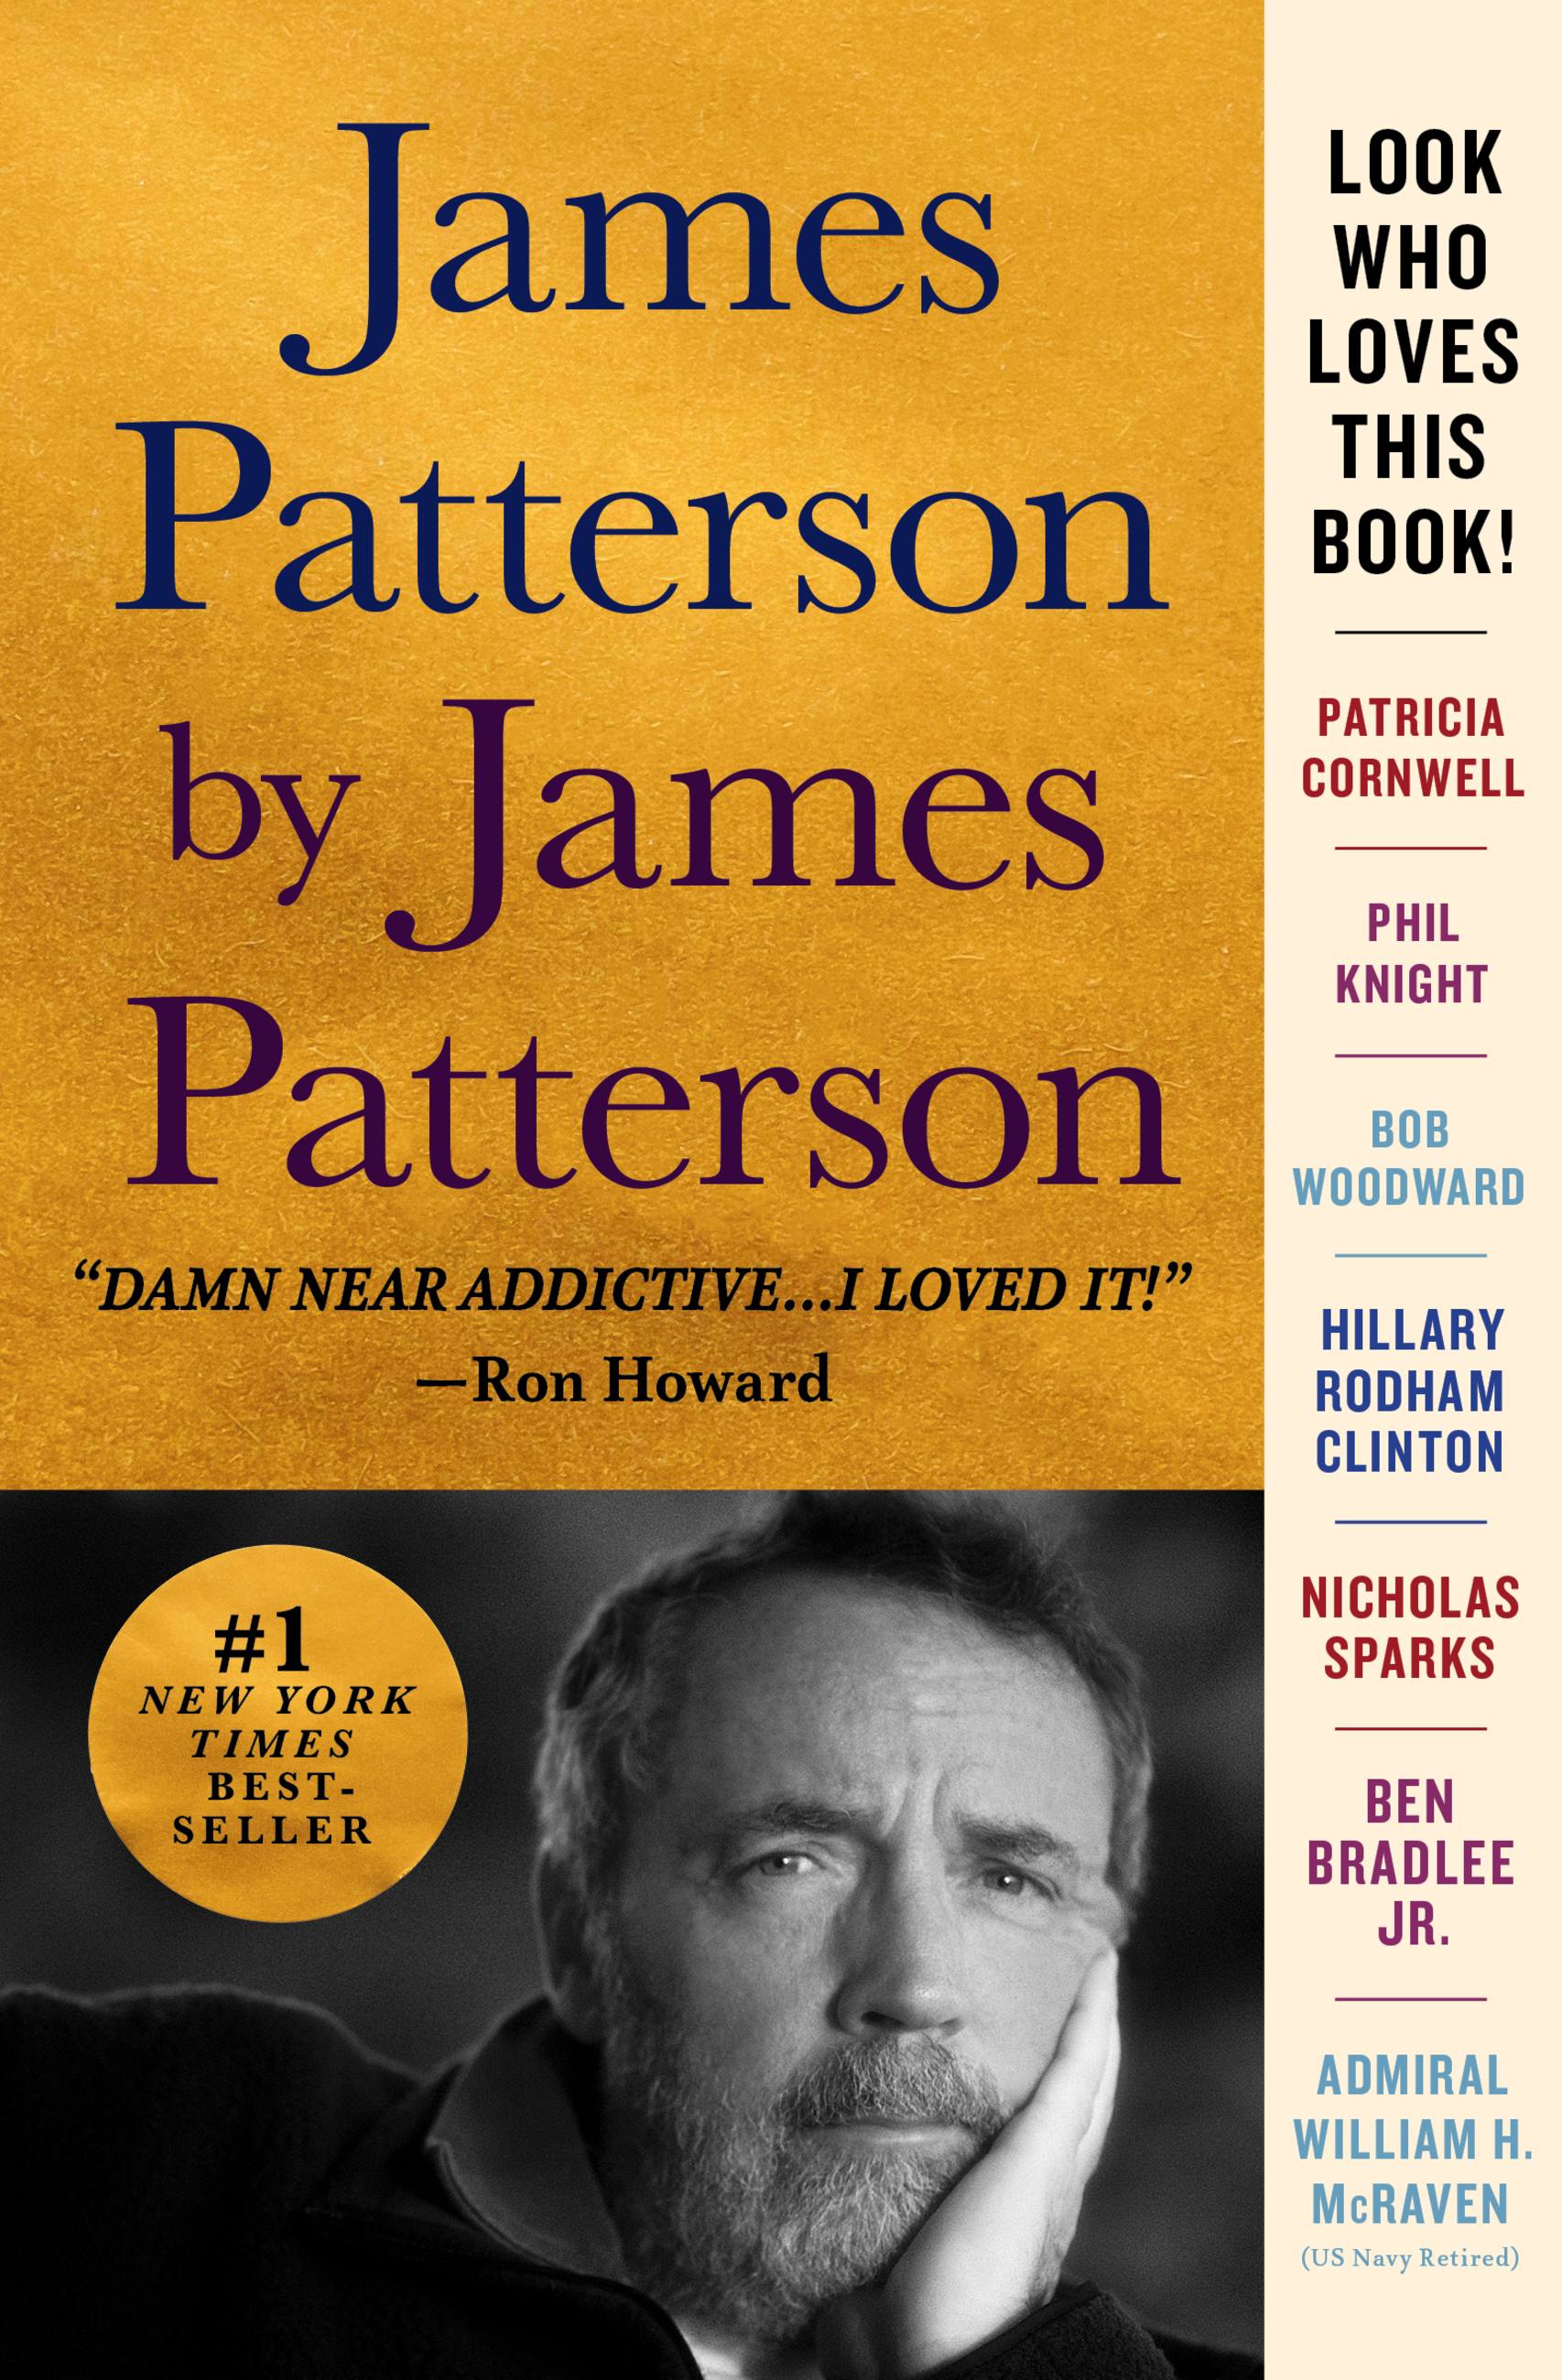 James Patterson by James Patterson by James Patterson